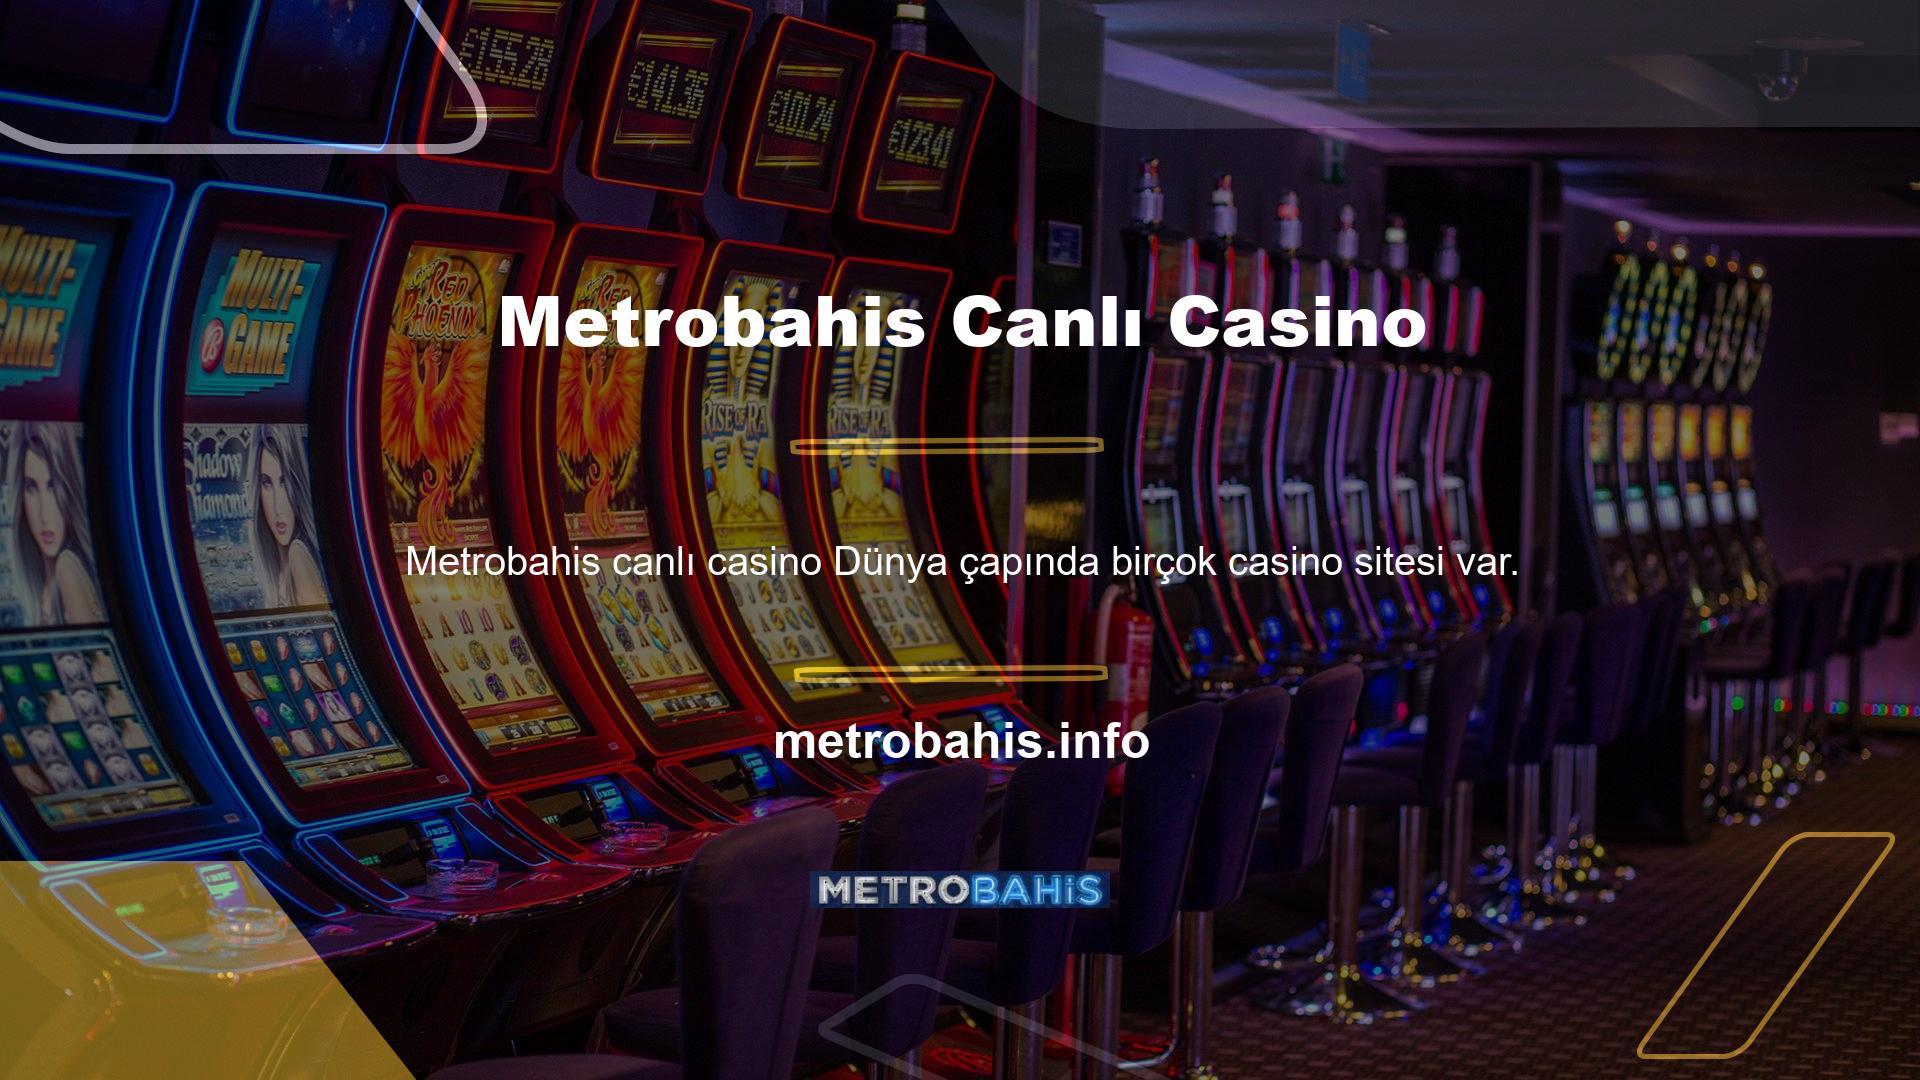 Metrobahis canlı casino bahis indirim sitesi, Metrobahis genellikle yüksek oranlarıyla anılır